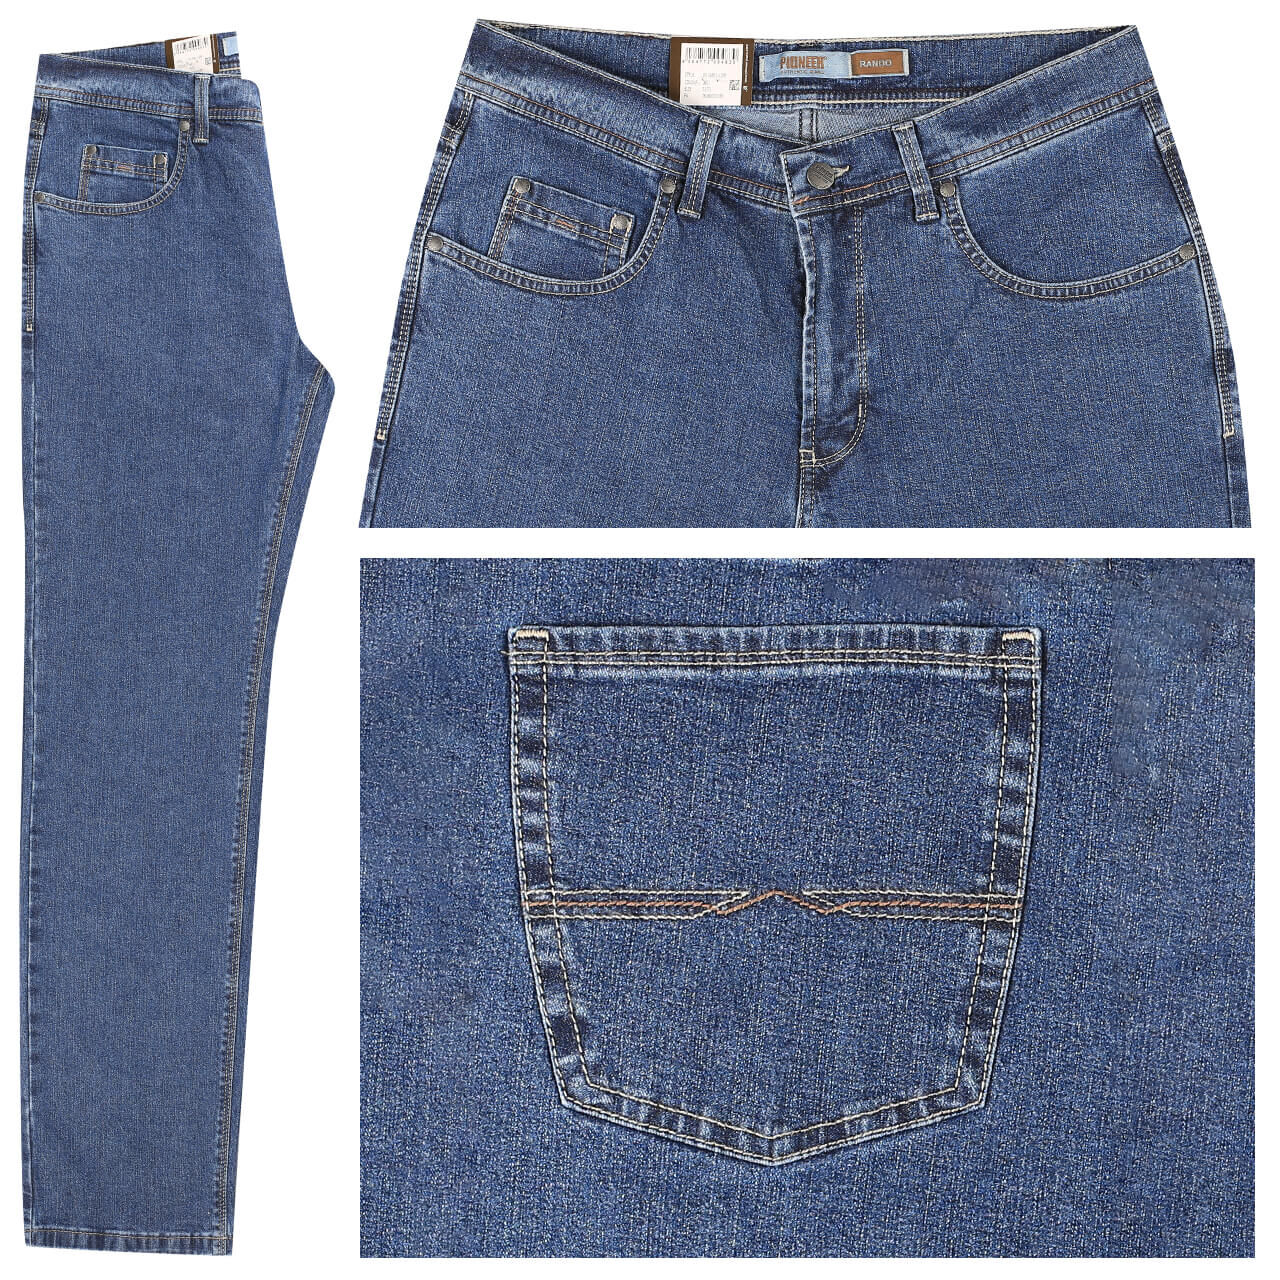 Pioneer Jeans Rando für Herren in Blau, FarbNr.: 6821